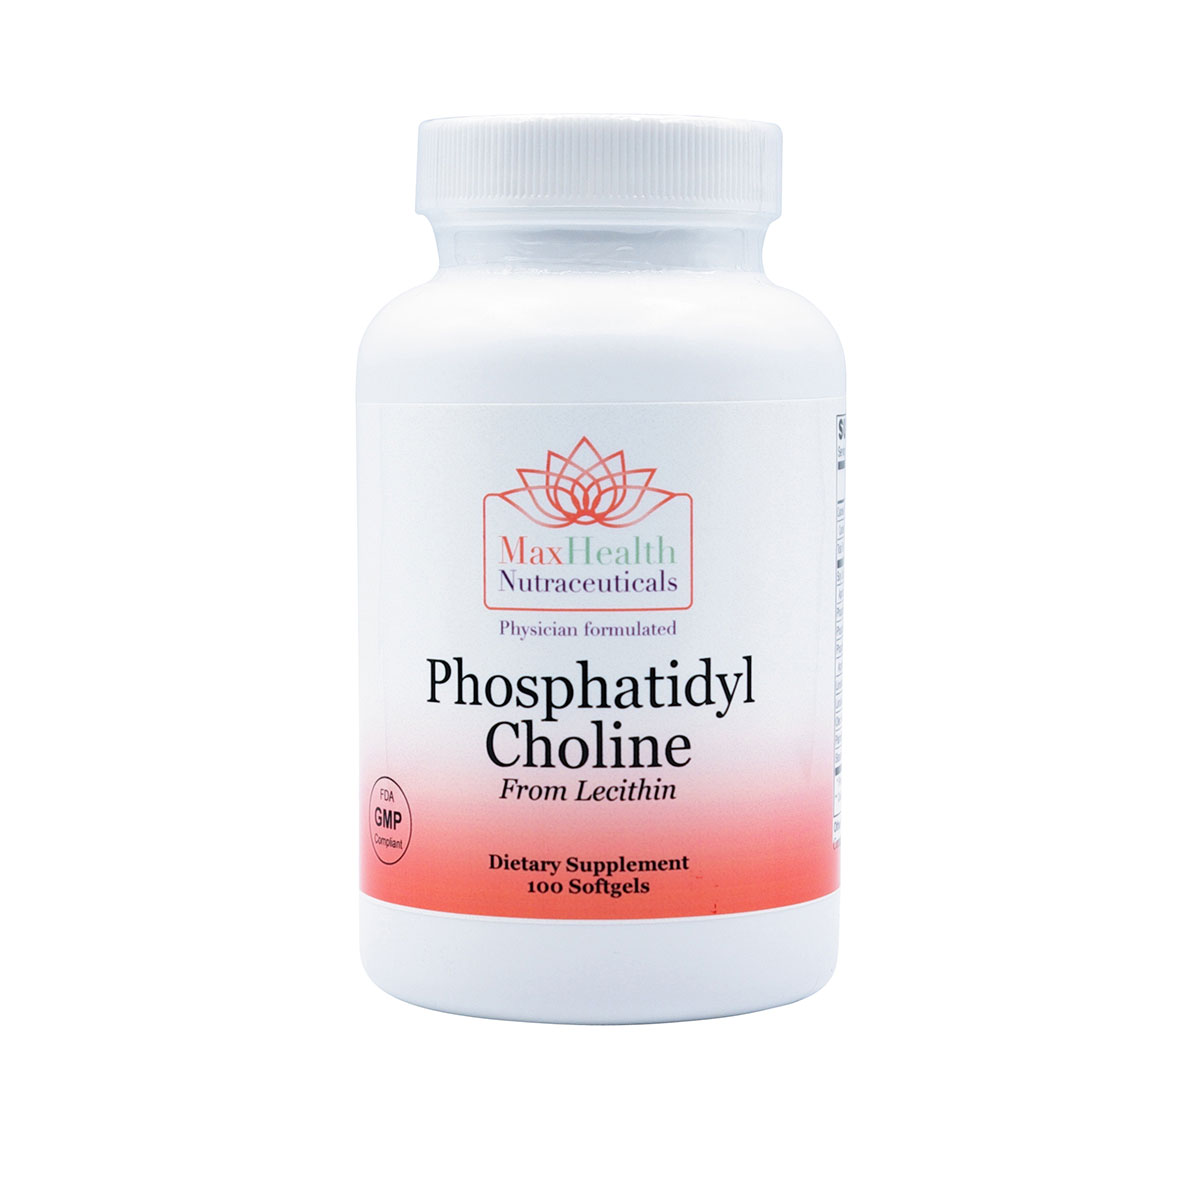 11Phosphatidyl Choline from Lecithin